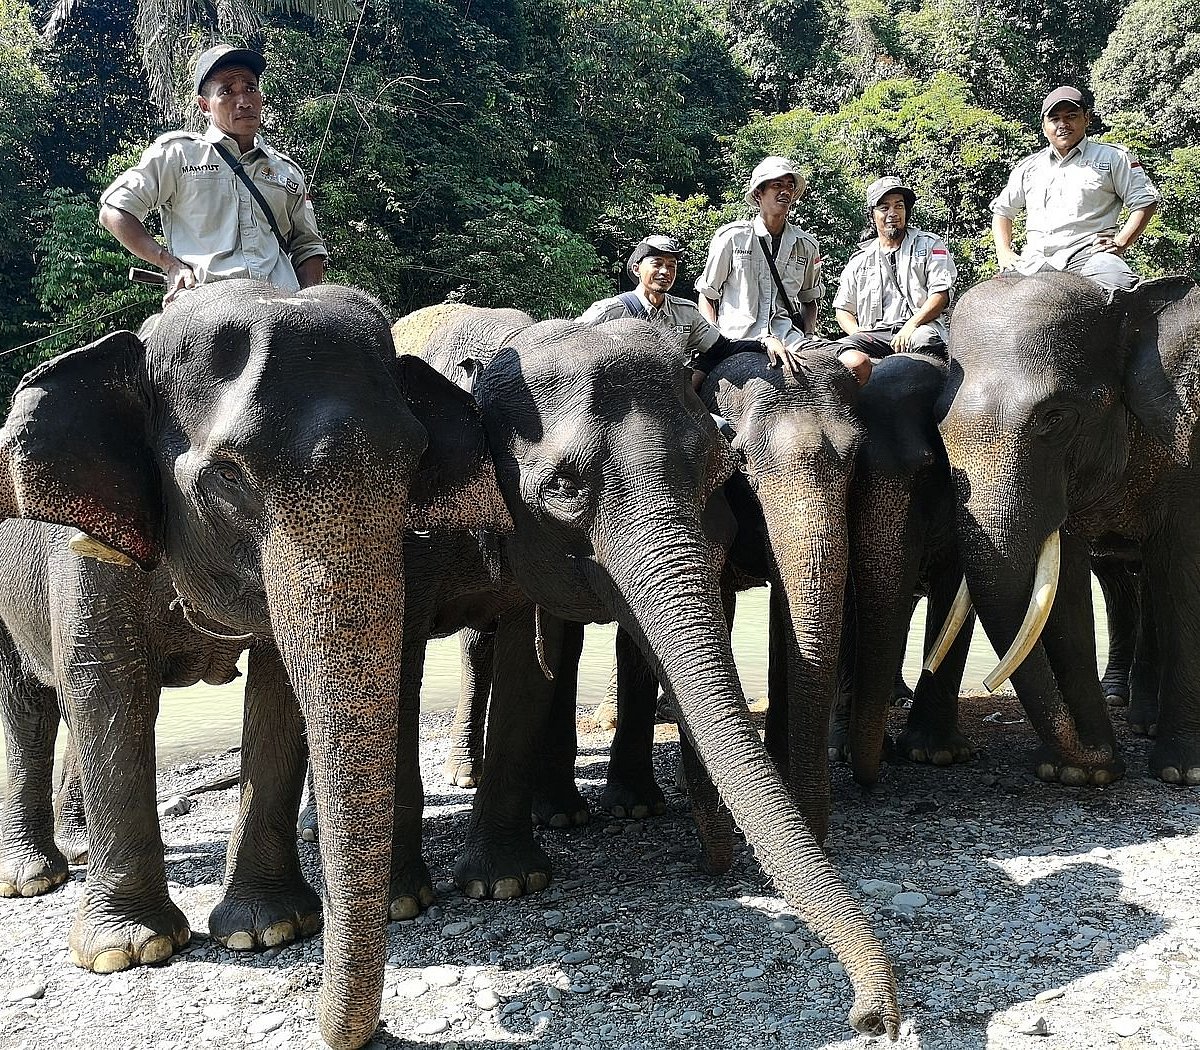 Элефант Камп. Слон лагерь. Катание на слонах (Elephant Camp) Пхукет. Elephant camp